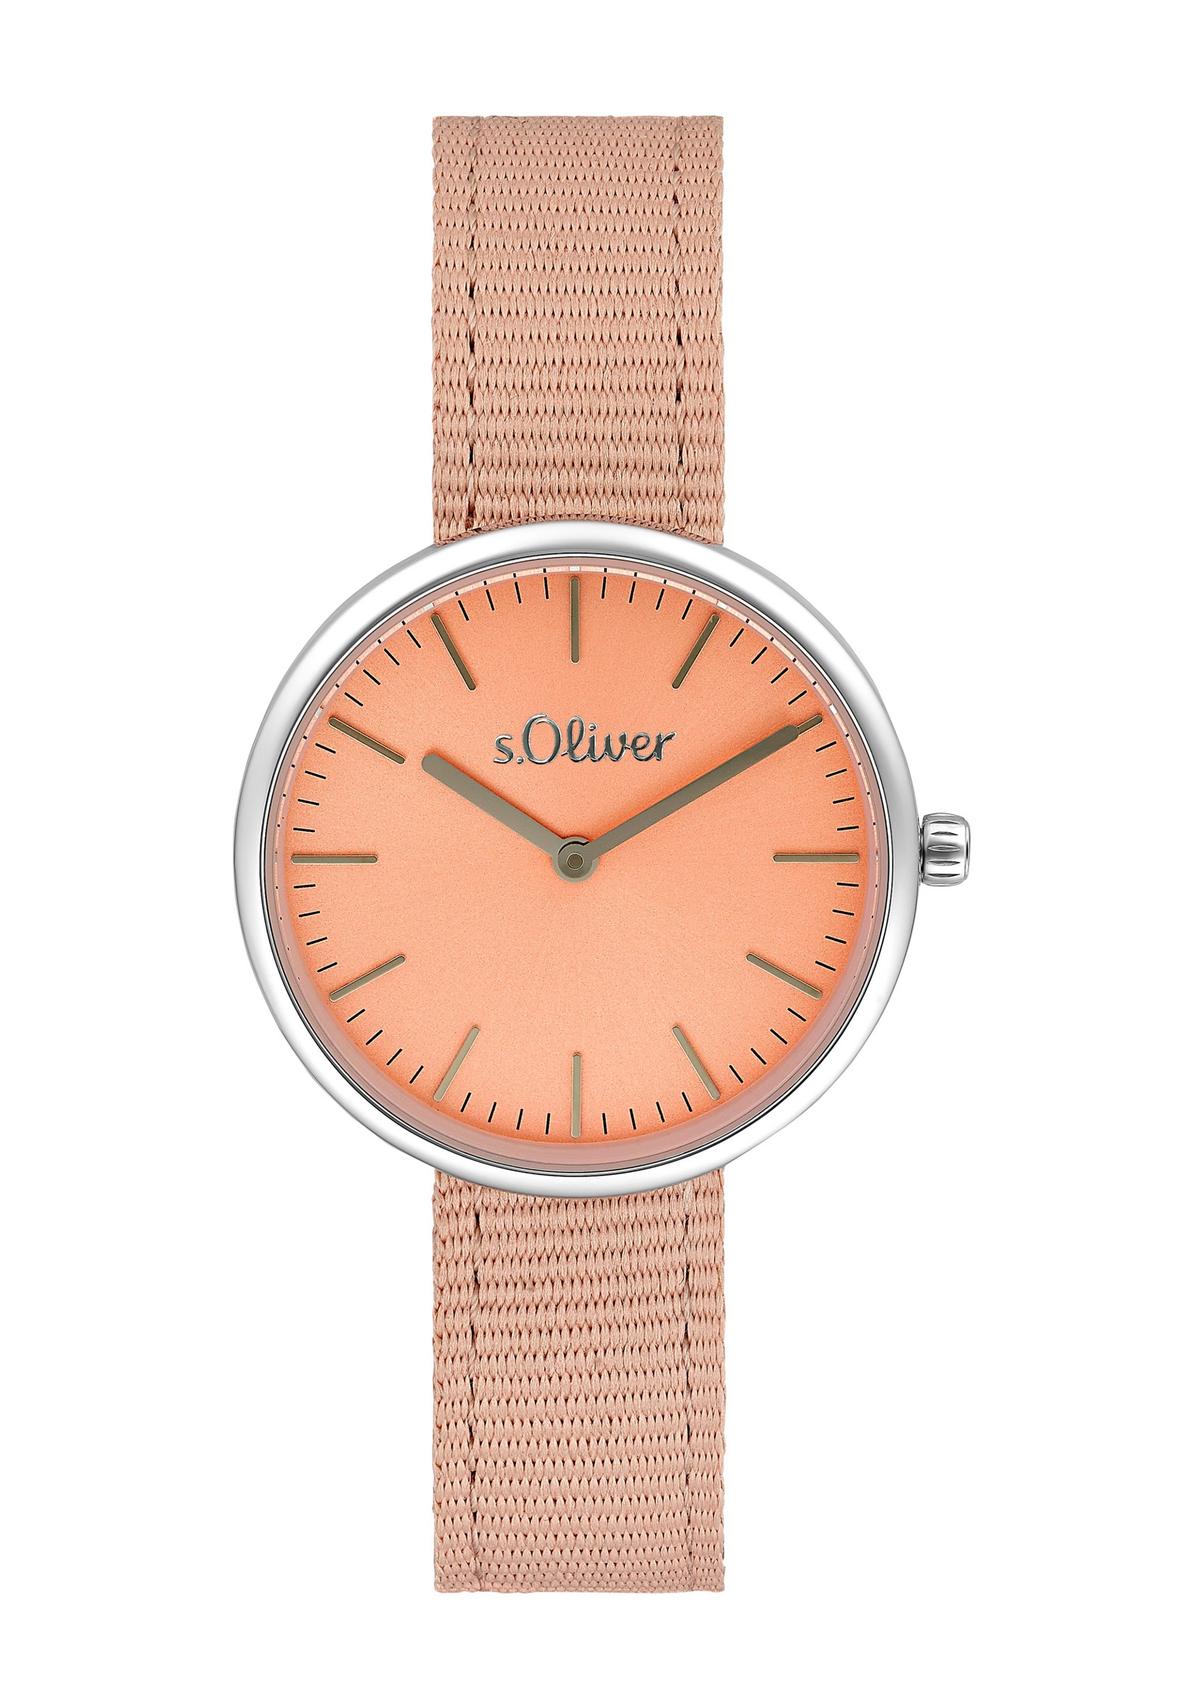 s.Oliver Modern horloge met bandje van textiel